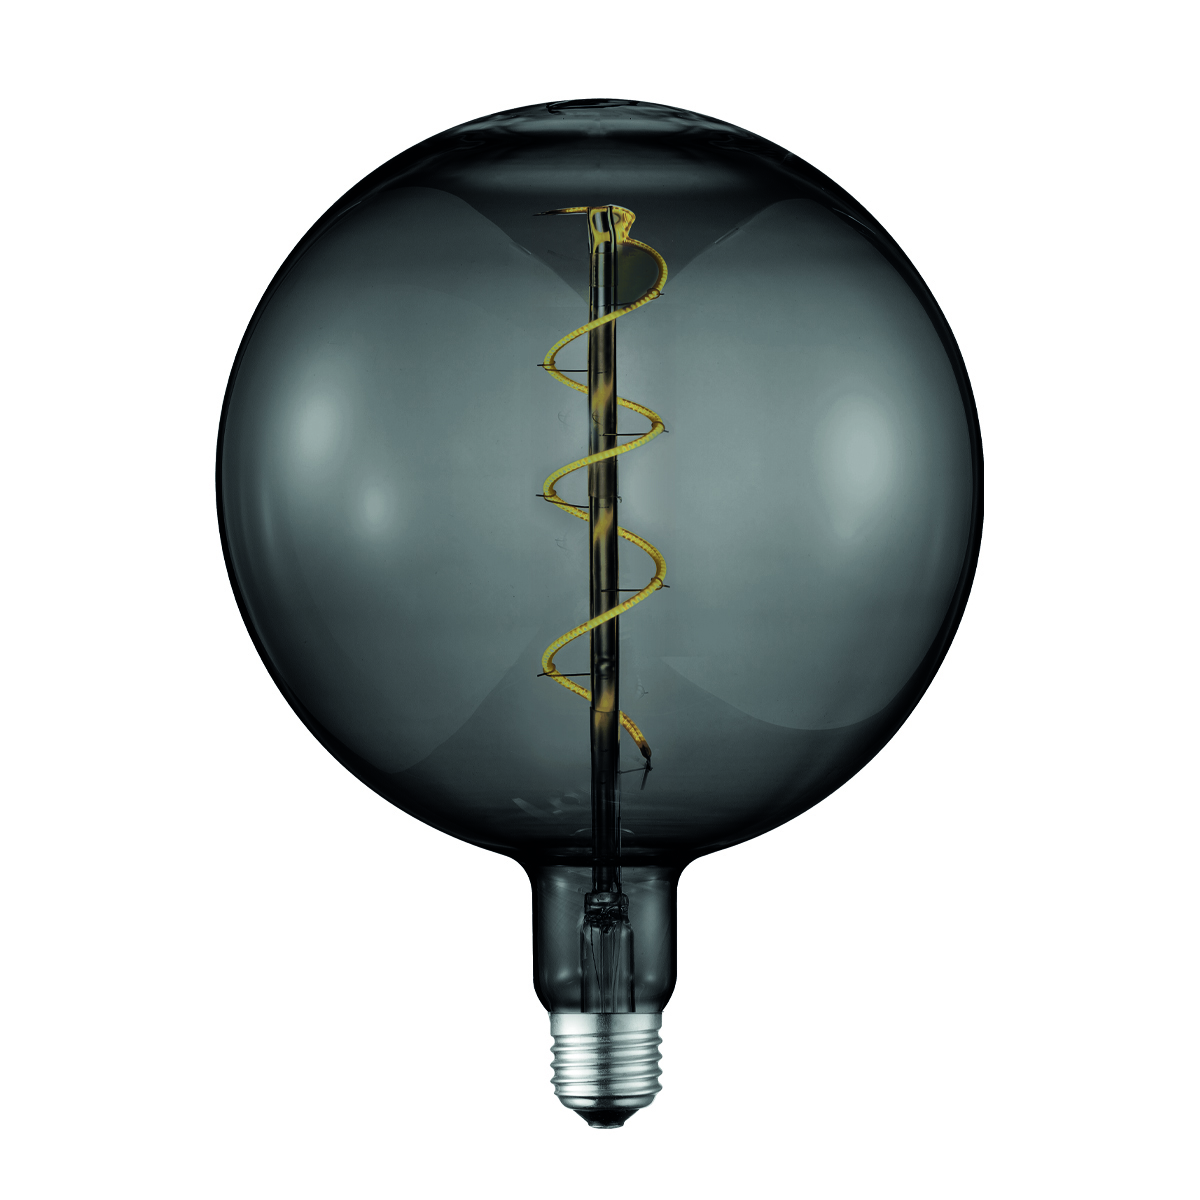 Tangla lighting - TLB-8013-04TM - LED Light Bulb Single Spiral filament - G180 4W titanium - large - dimmabel - E27